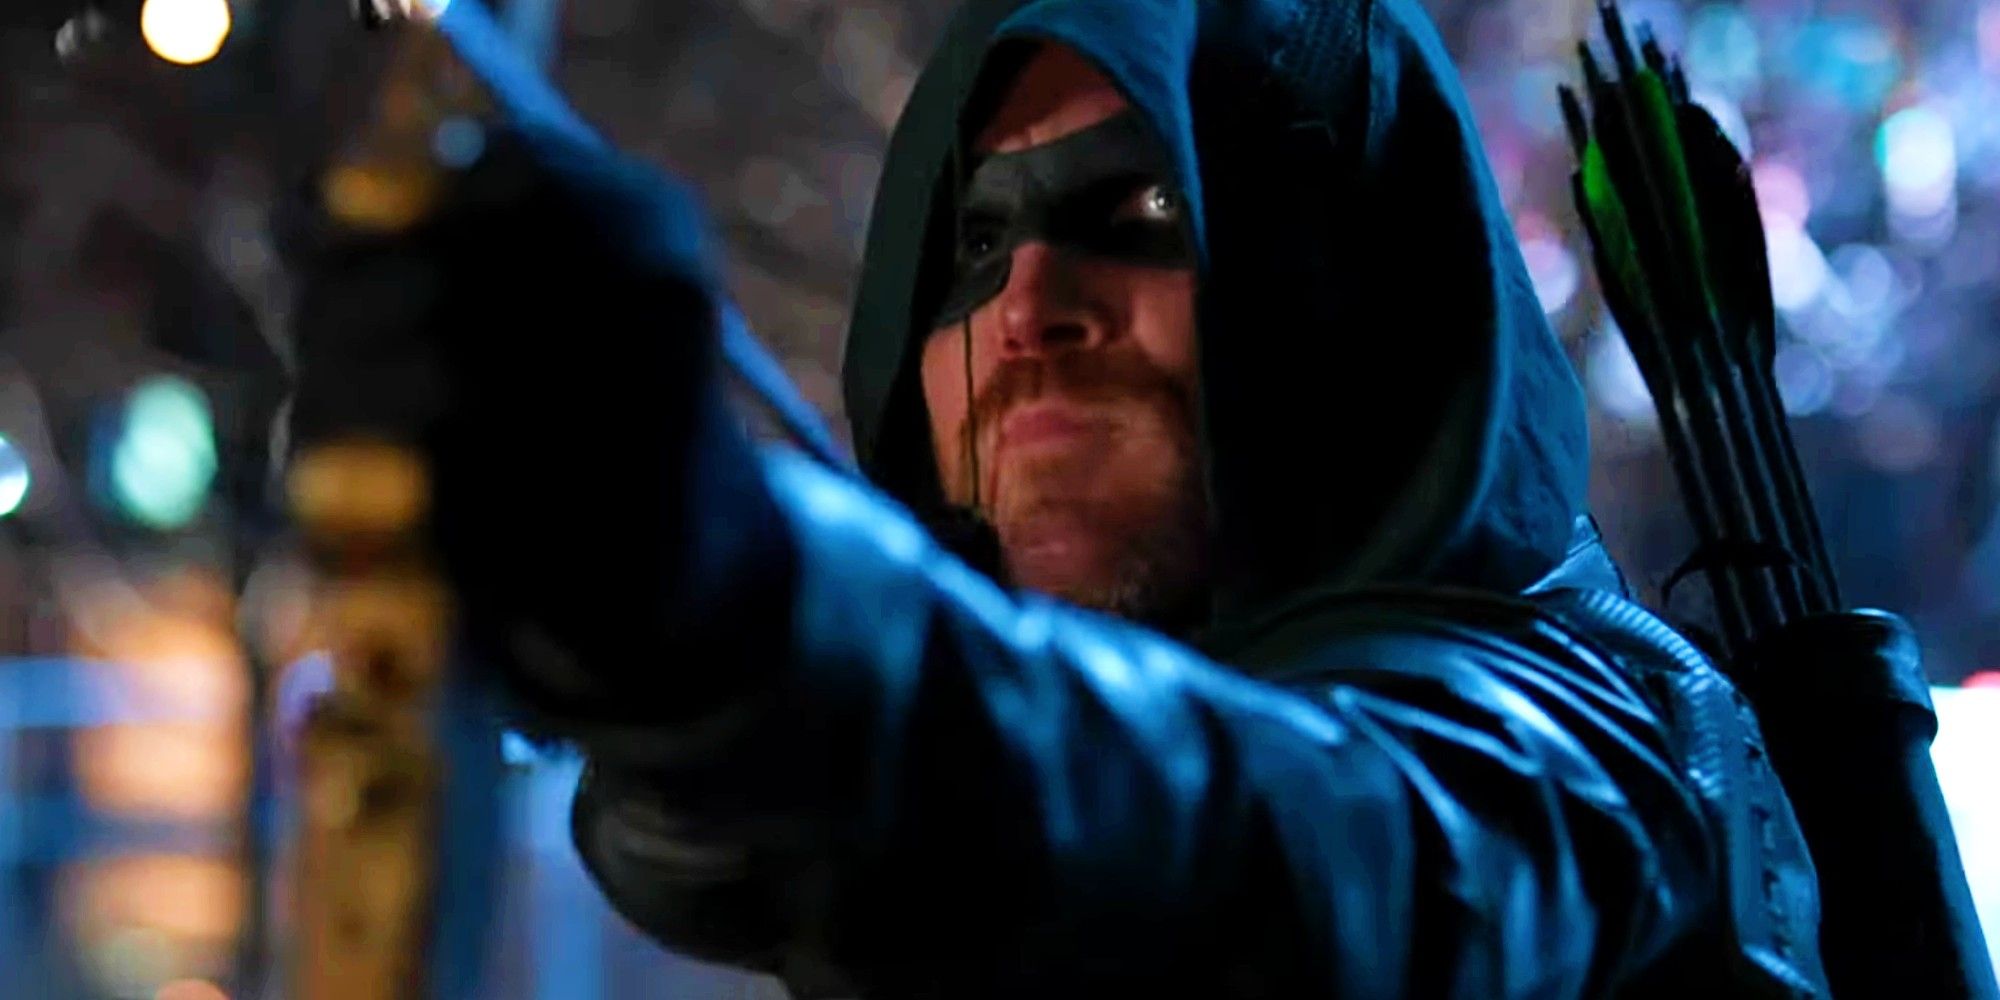 “Hay un nuevo multiverso”: Green Arrow regresa al Arrowverse en The Flash Season 9 Ep 9 Trailer